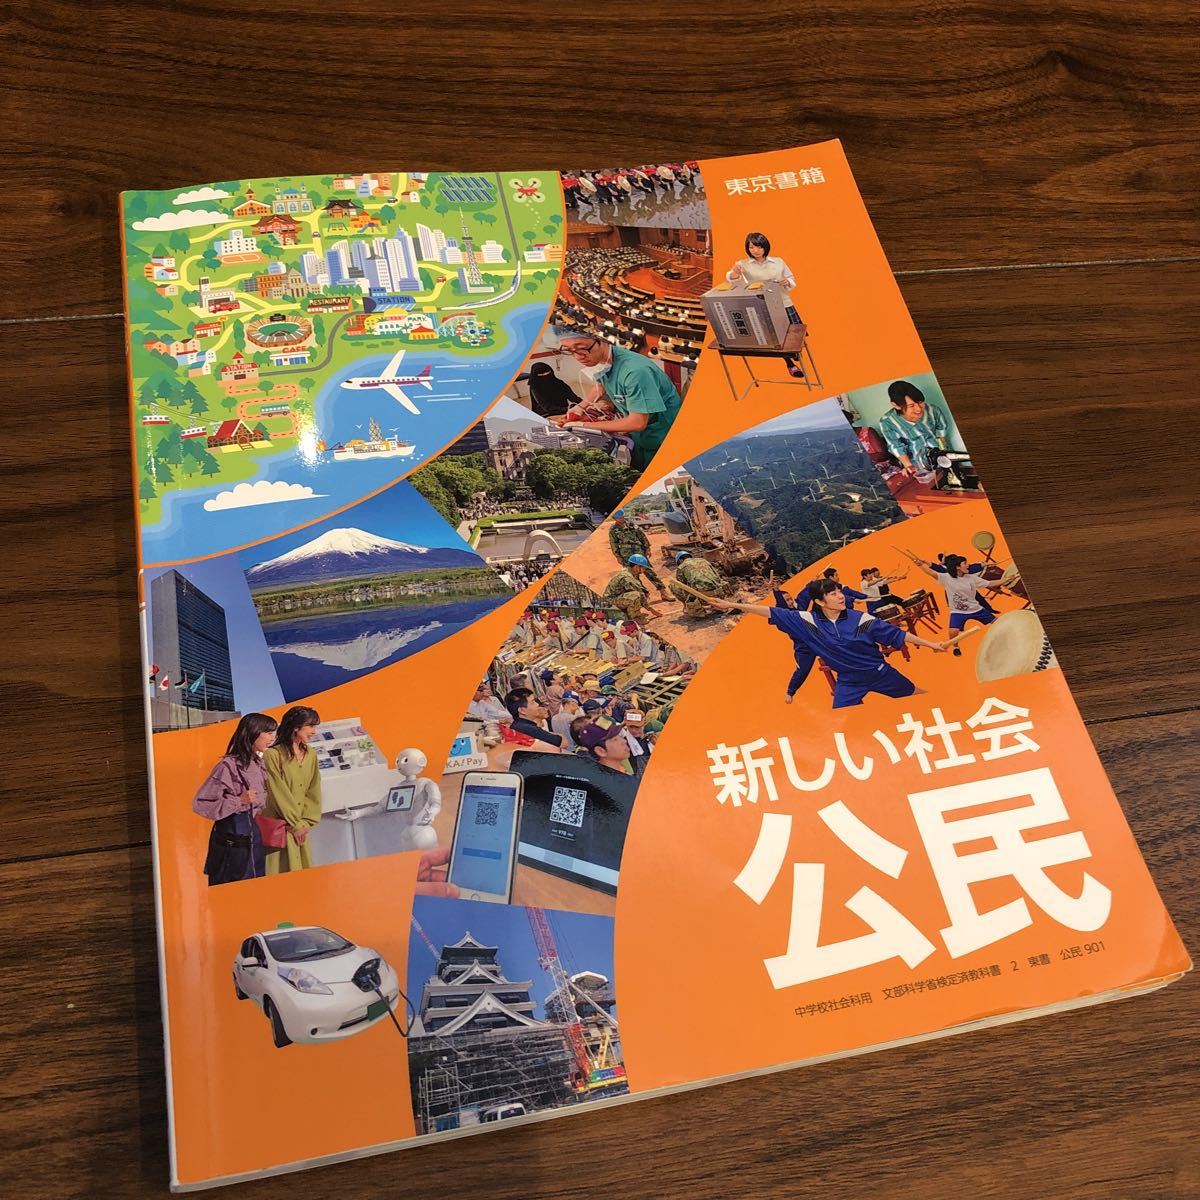 [ новый общество ..] Tokyo литература учебник ученик неполной средней школы 